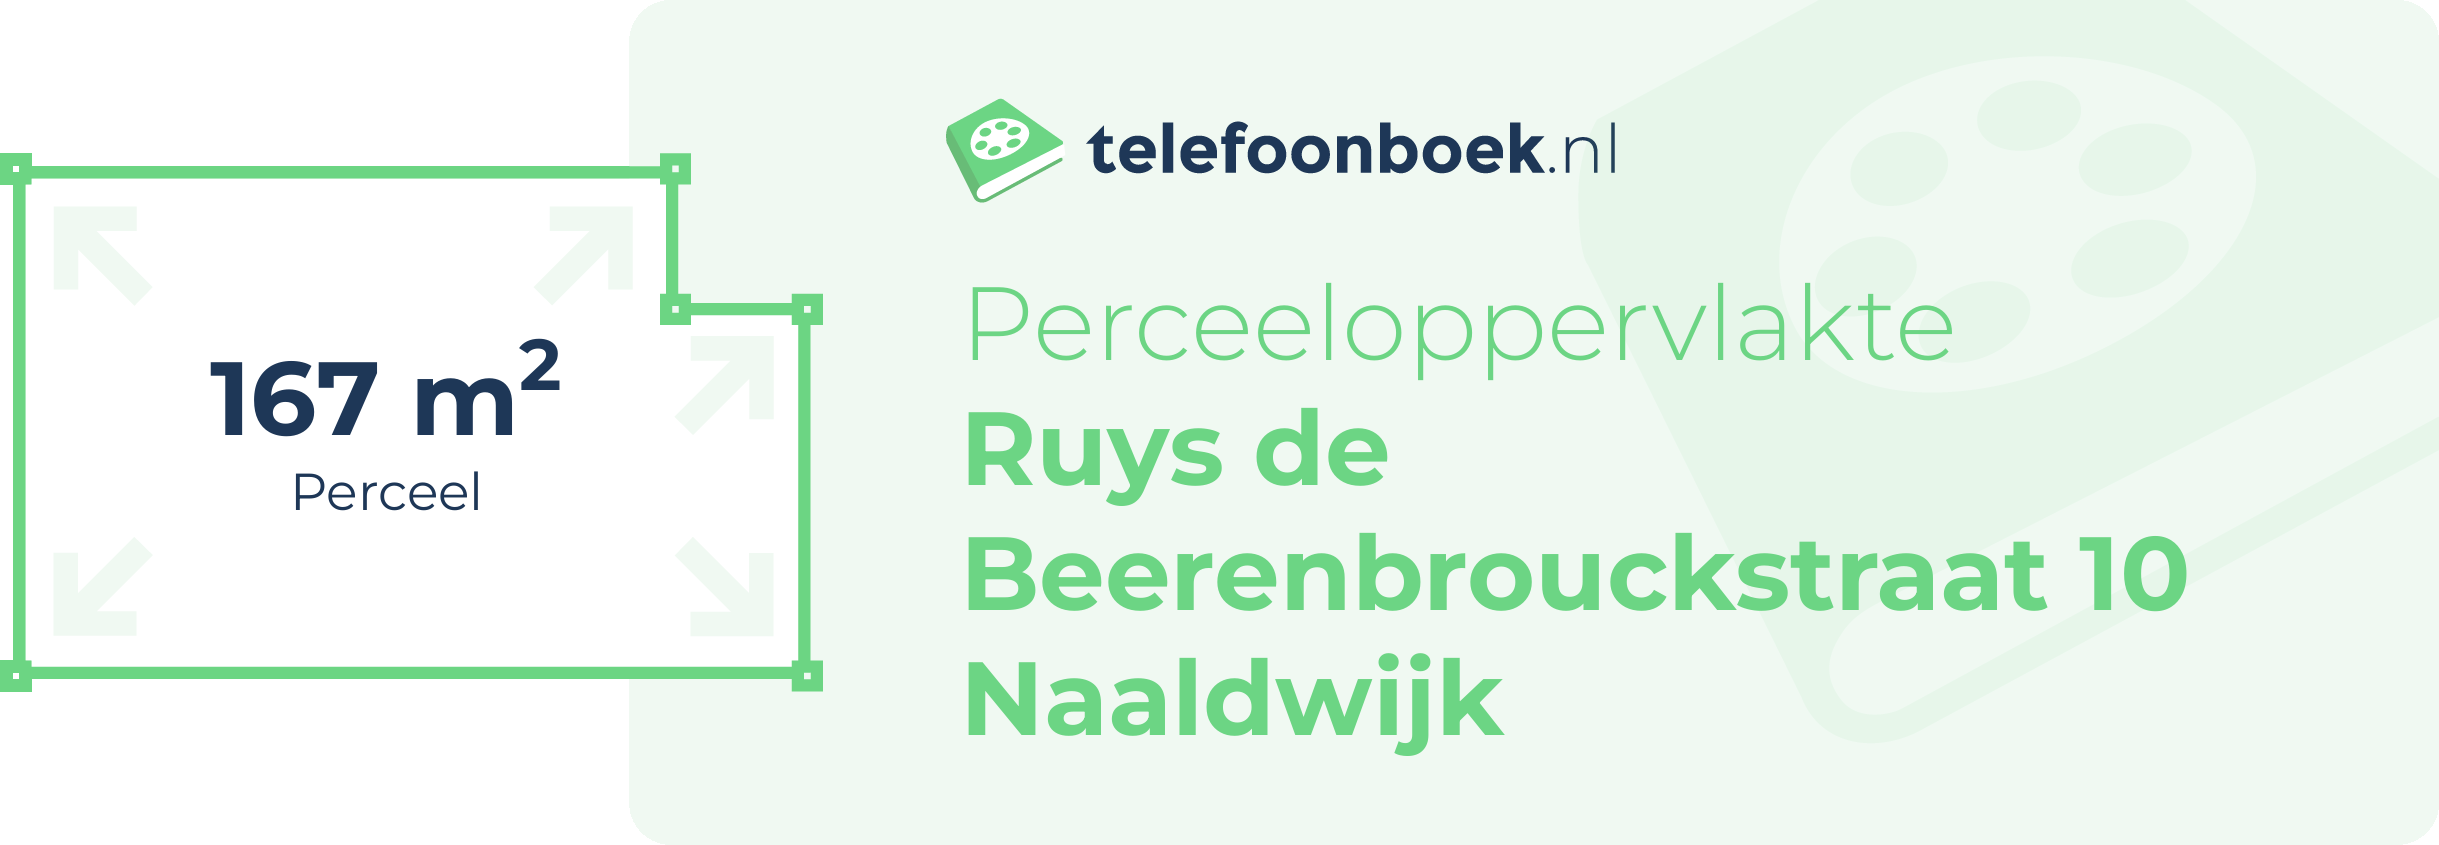 Perceeloppervlakte Ruys De Beerenbrouckstraat 10 Naaldwijk